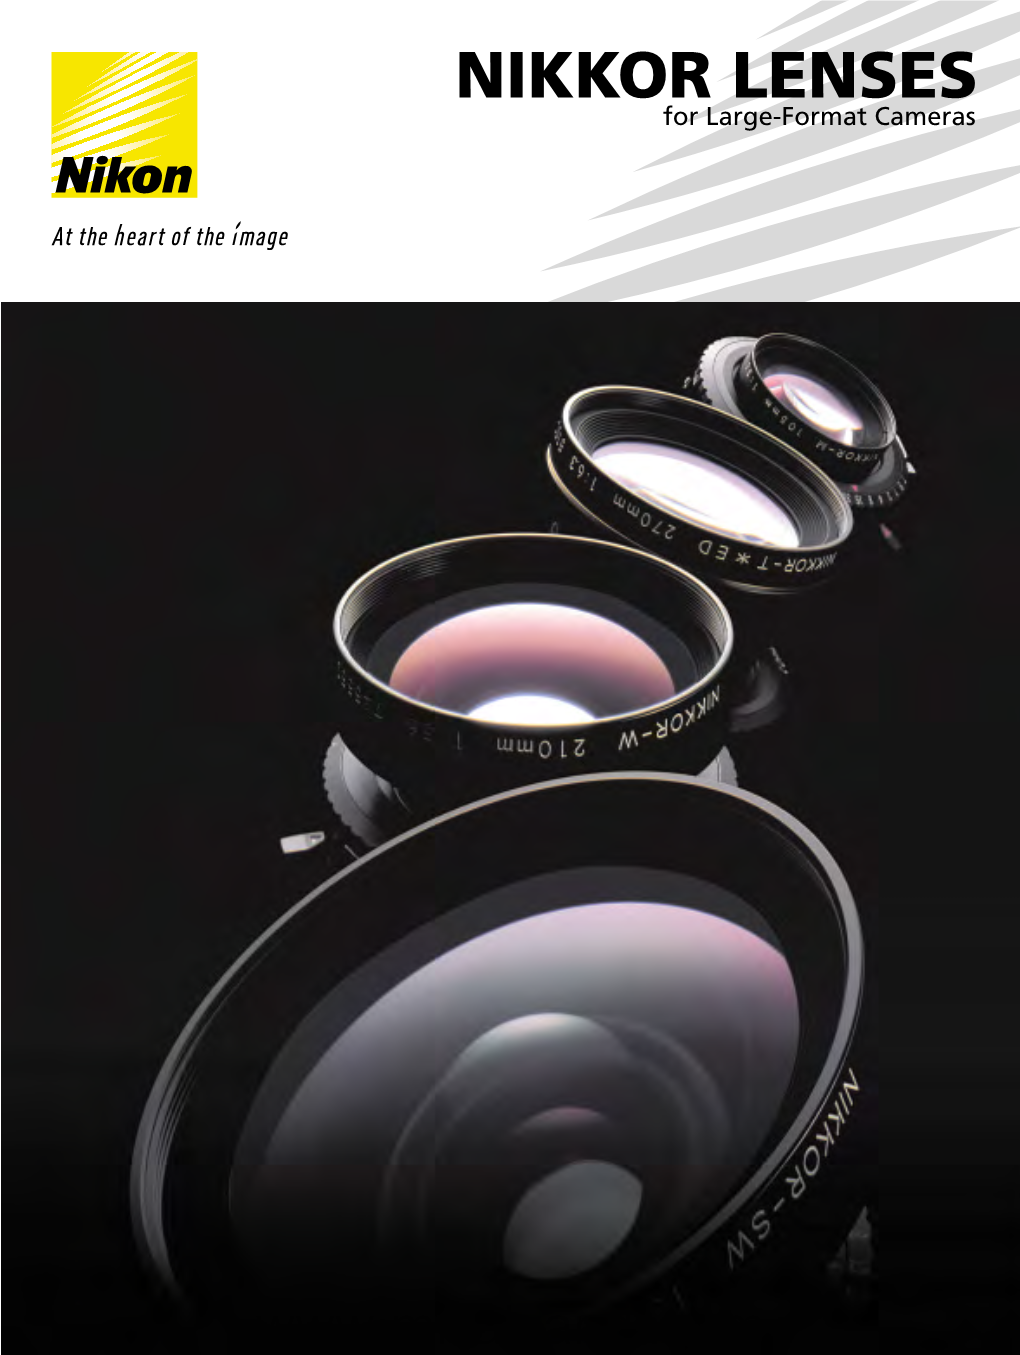 Nikon-Large-Format-Lenses.Pdf